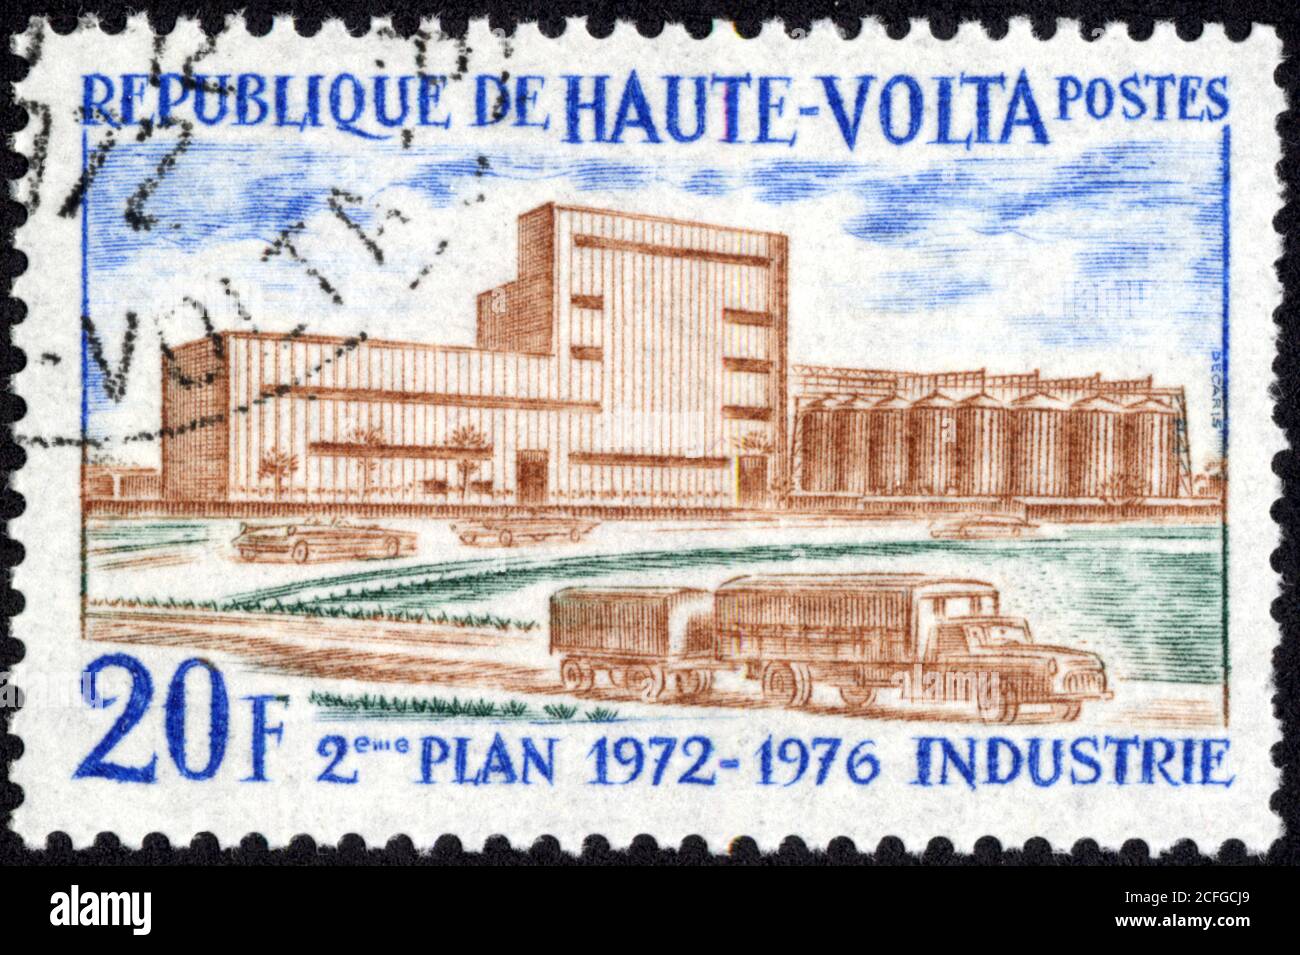 Timbre 2ème plan 1972-1976 industrie. 20 F. République de Haute-volta. Post Foto Stock